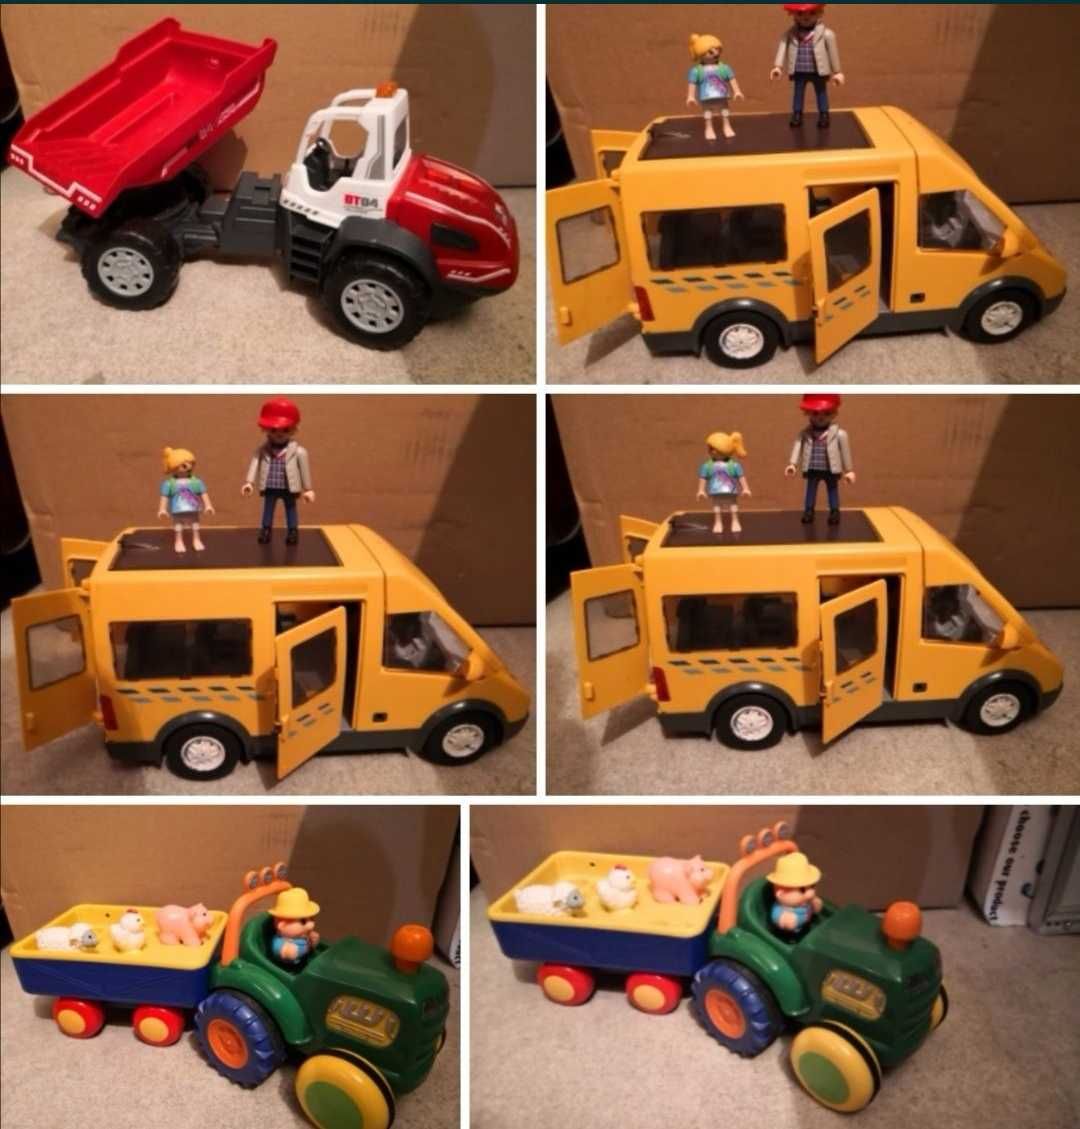 Playmobil traktor farmera, autobus, radiowoz policyjny, autka, auta